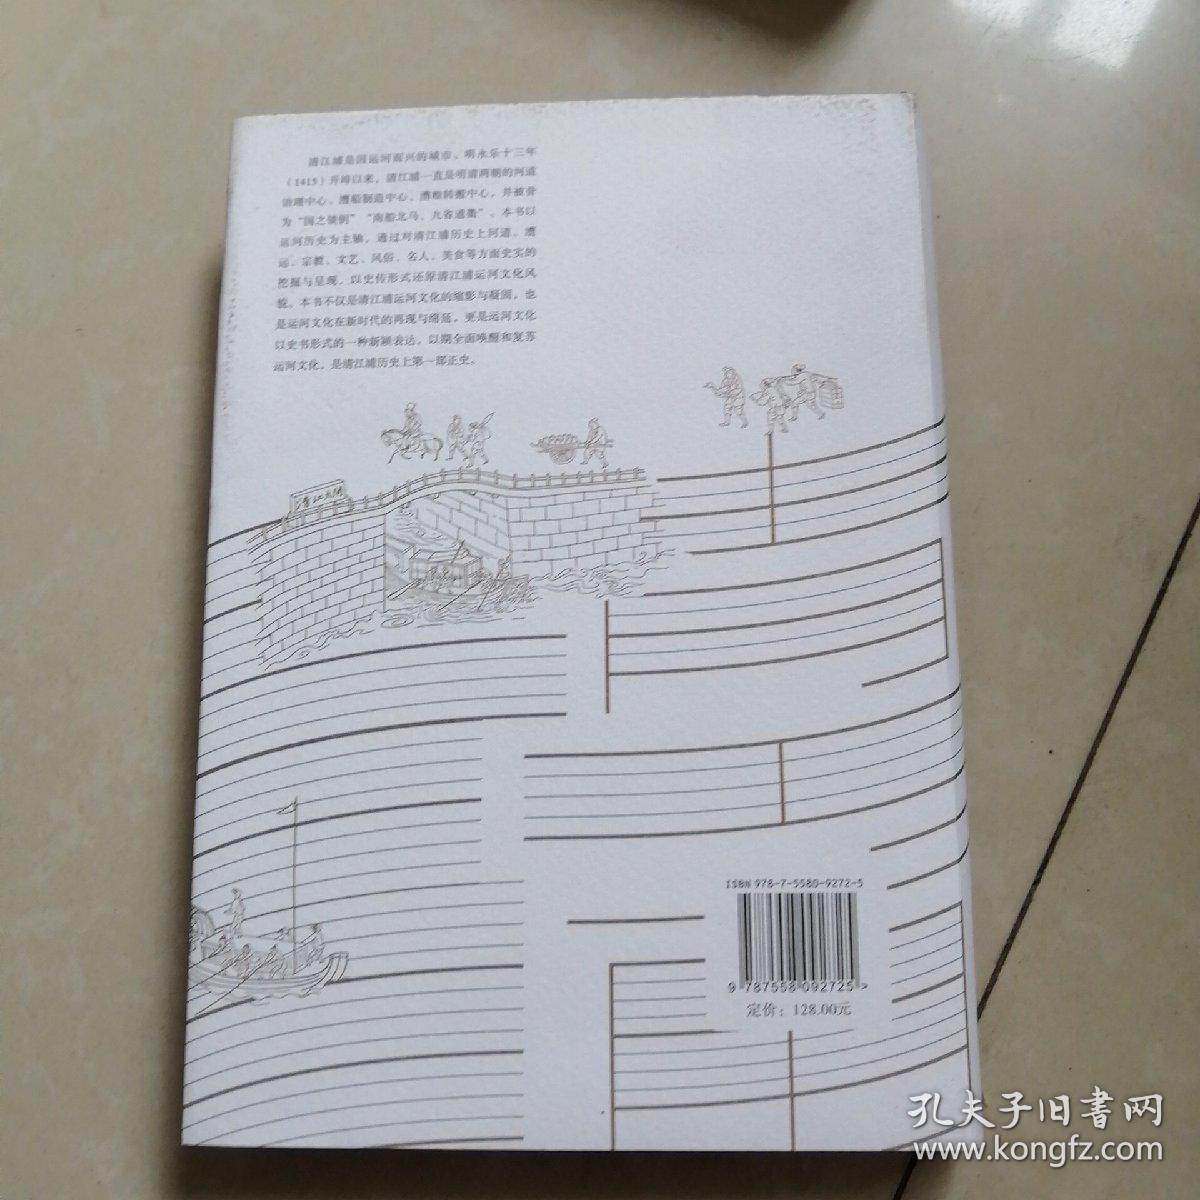 清江浦运河文化简史。